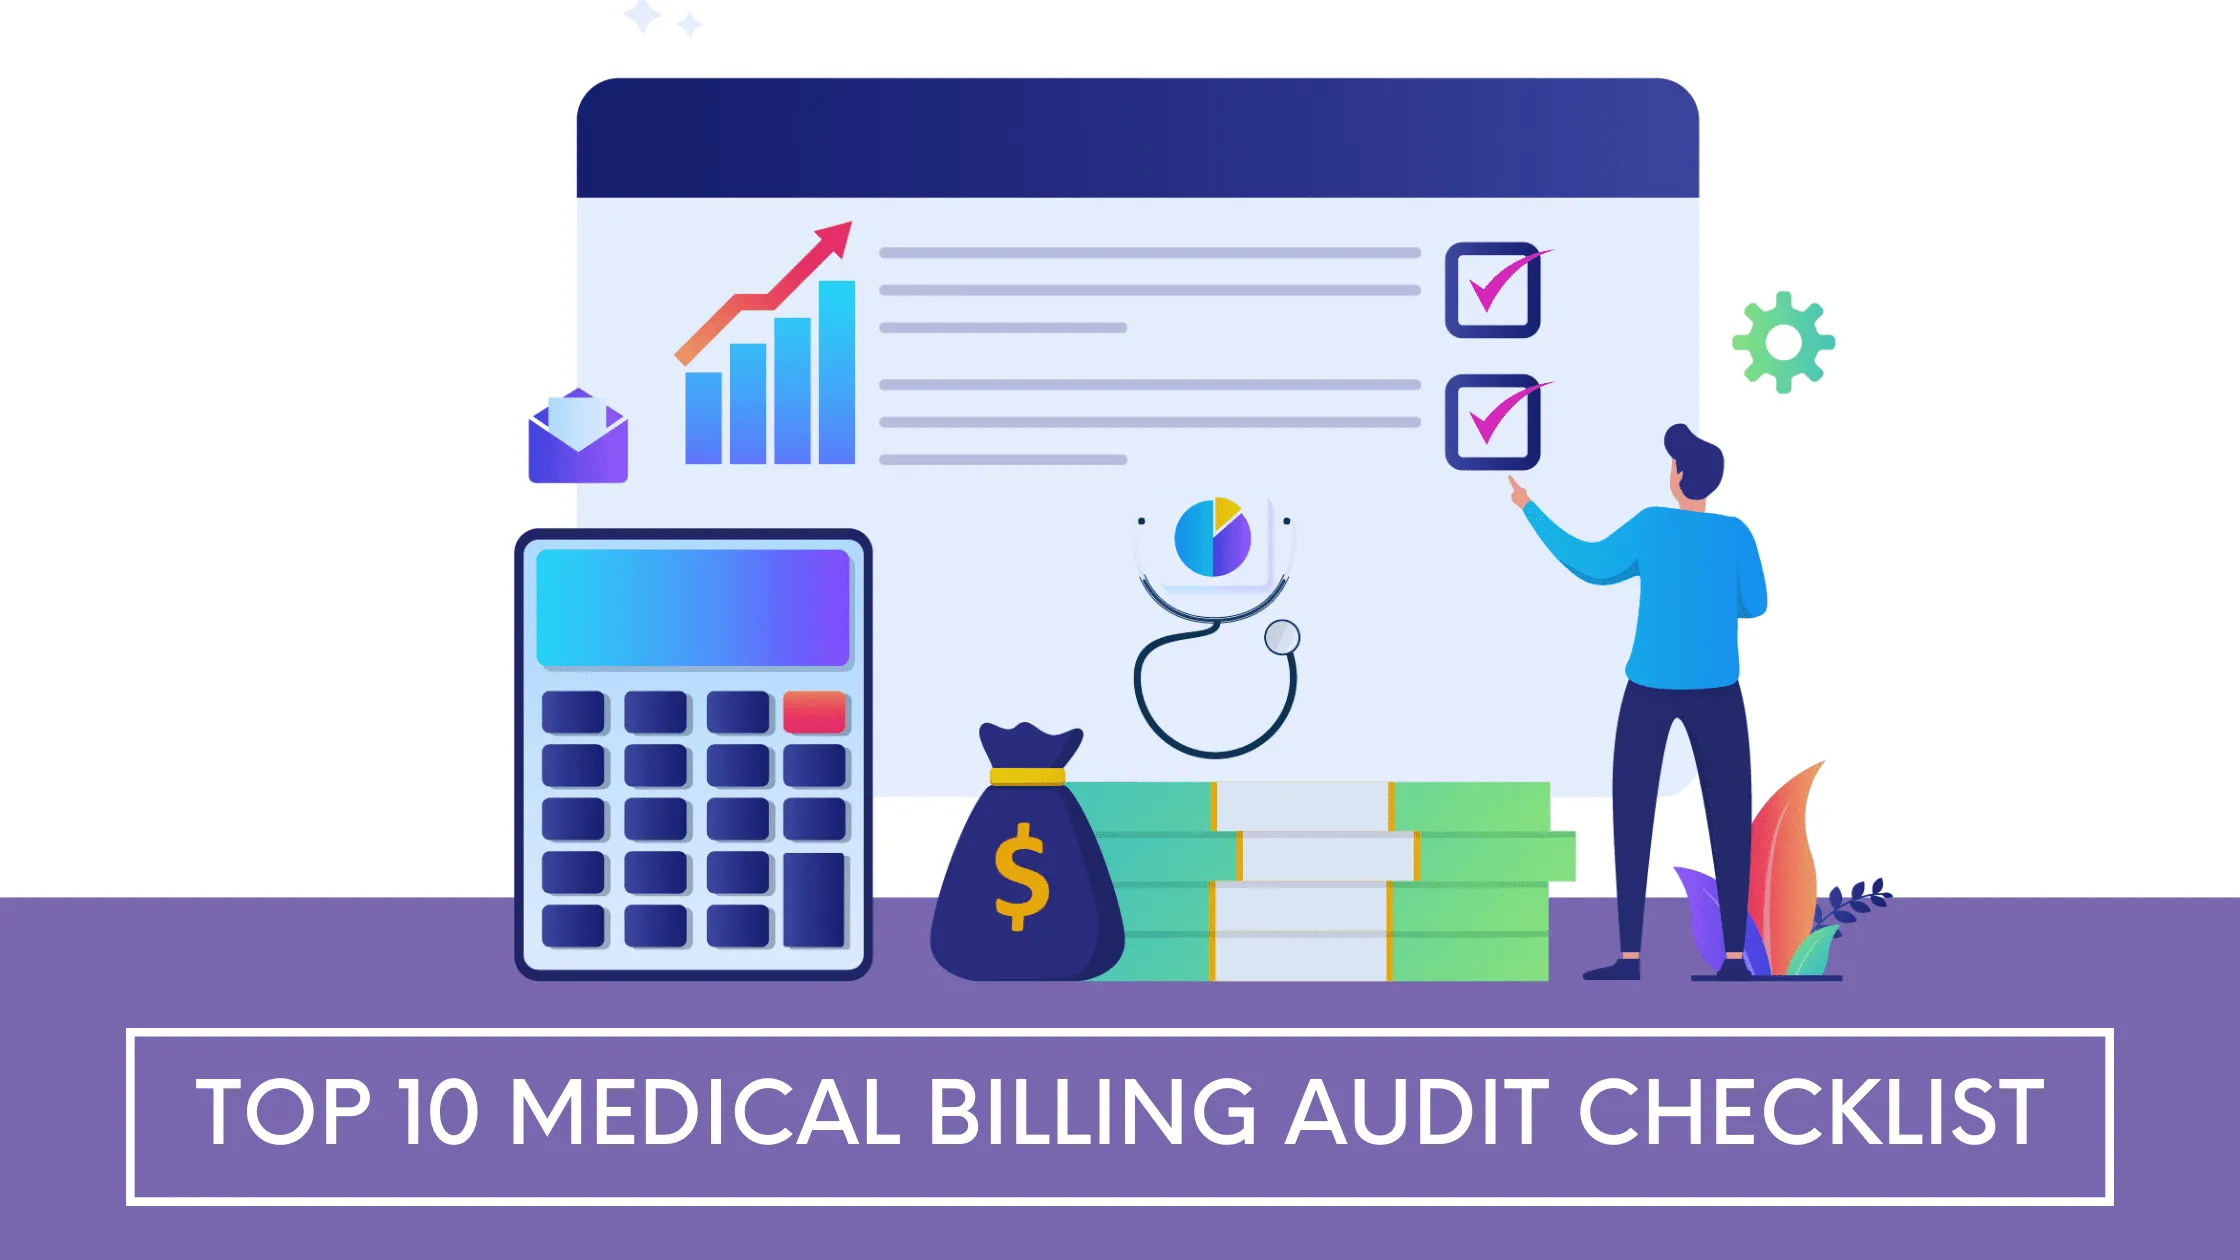 Medical billing audit